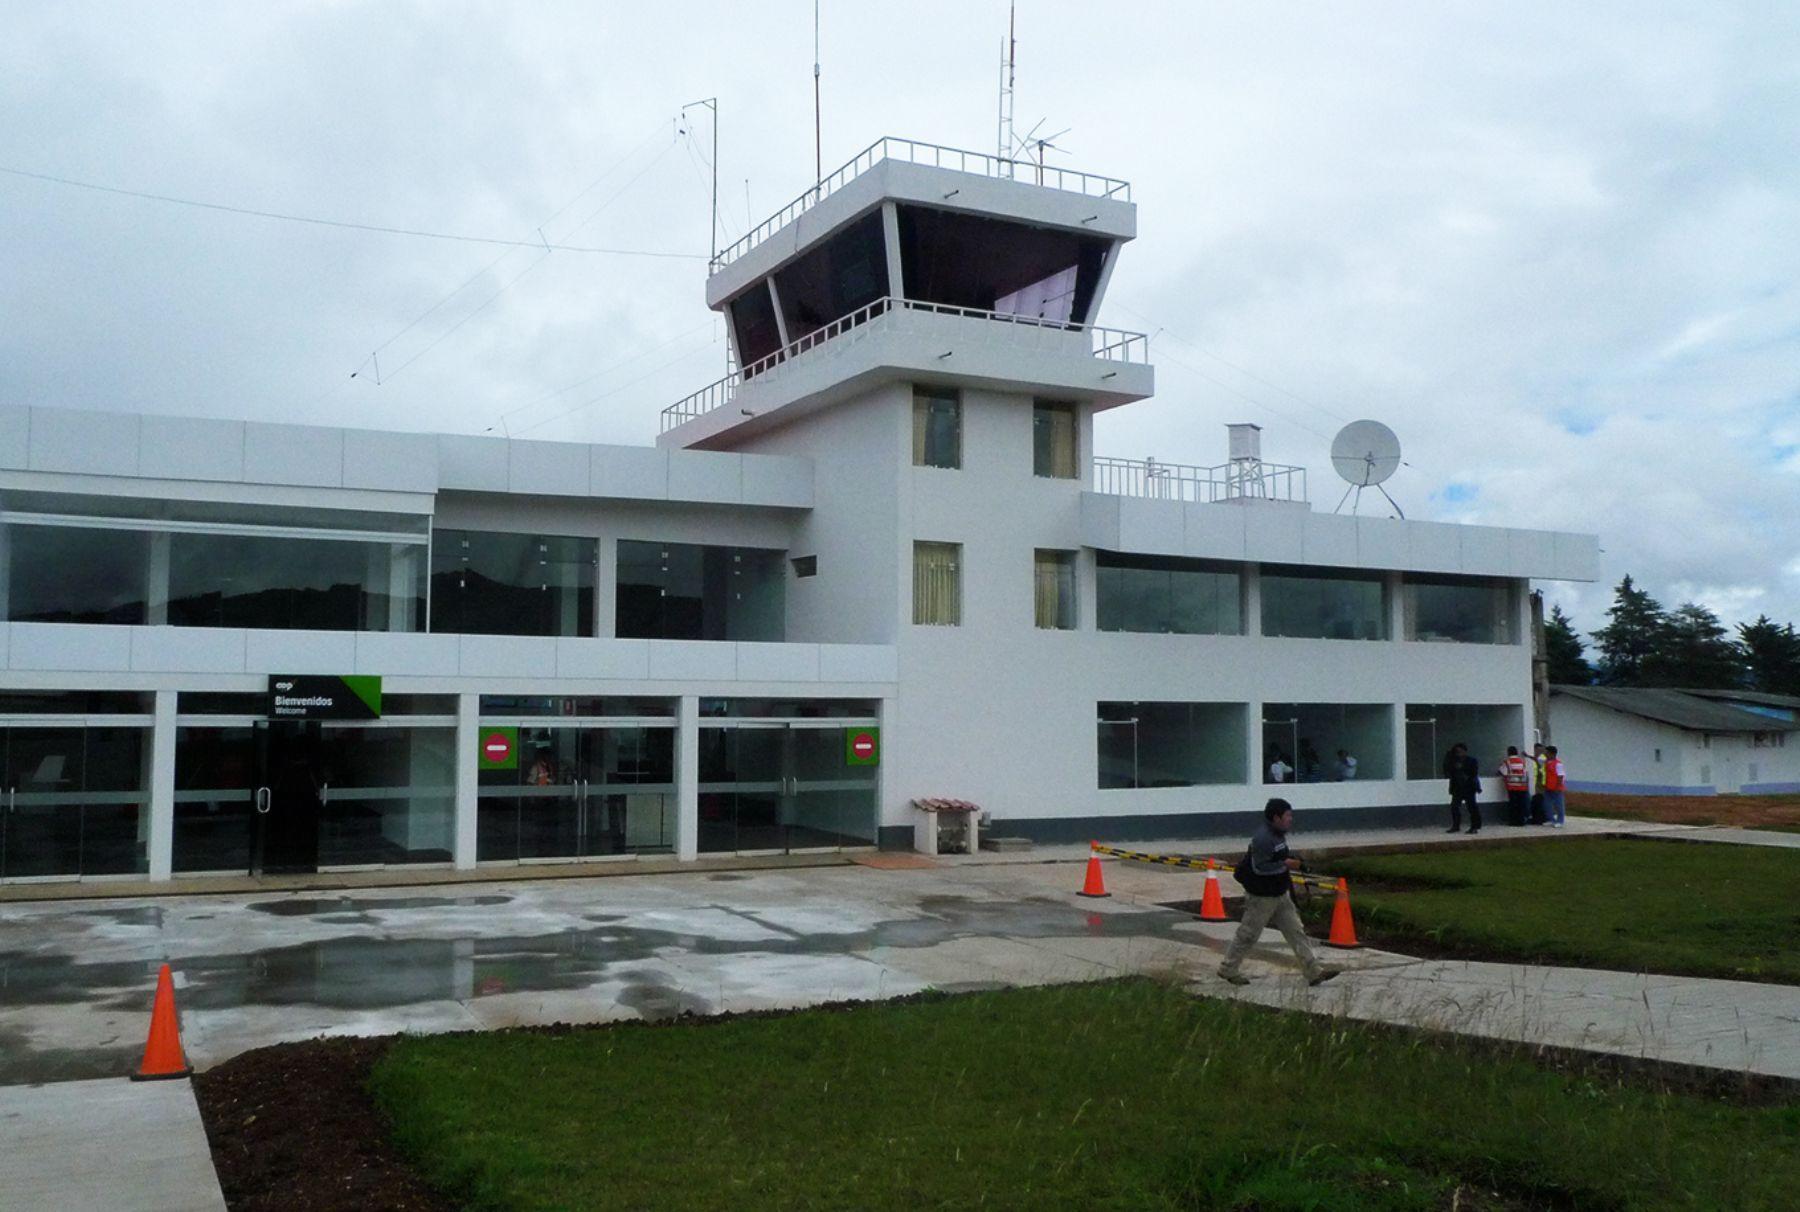 Aeropuerto-chachapoyas-andina-1800x1012